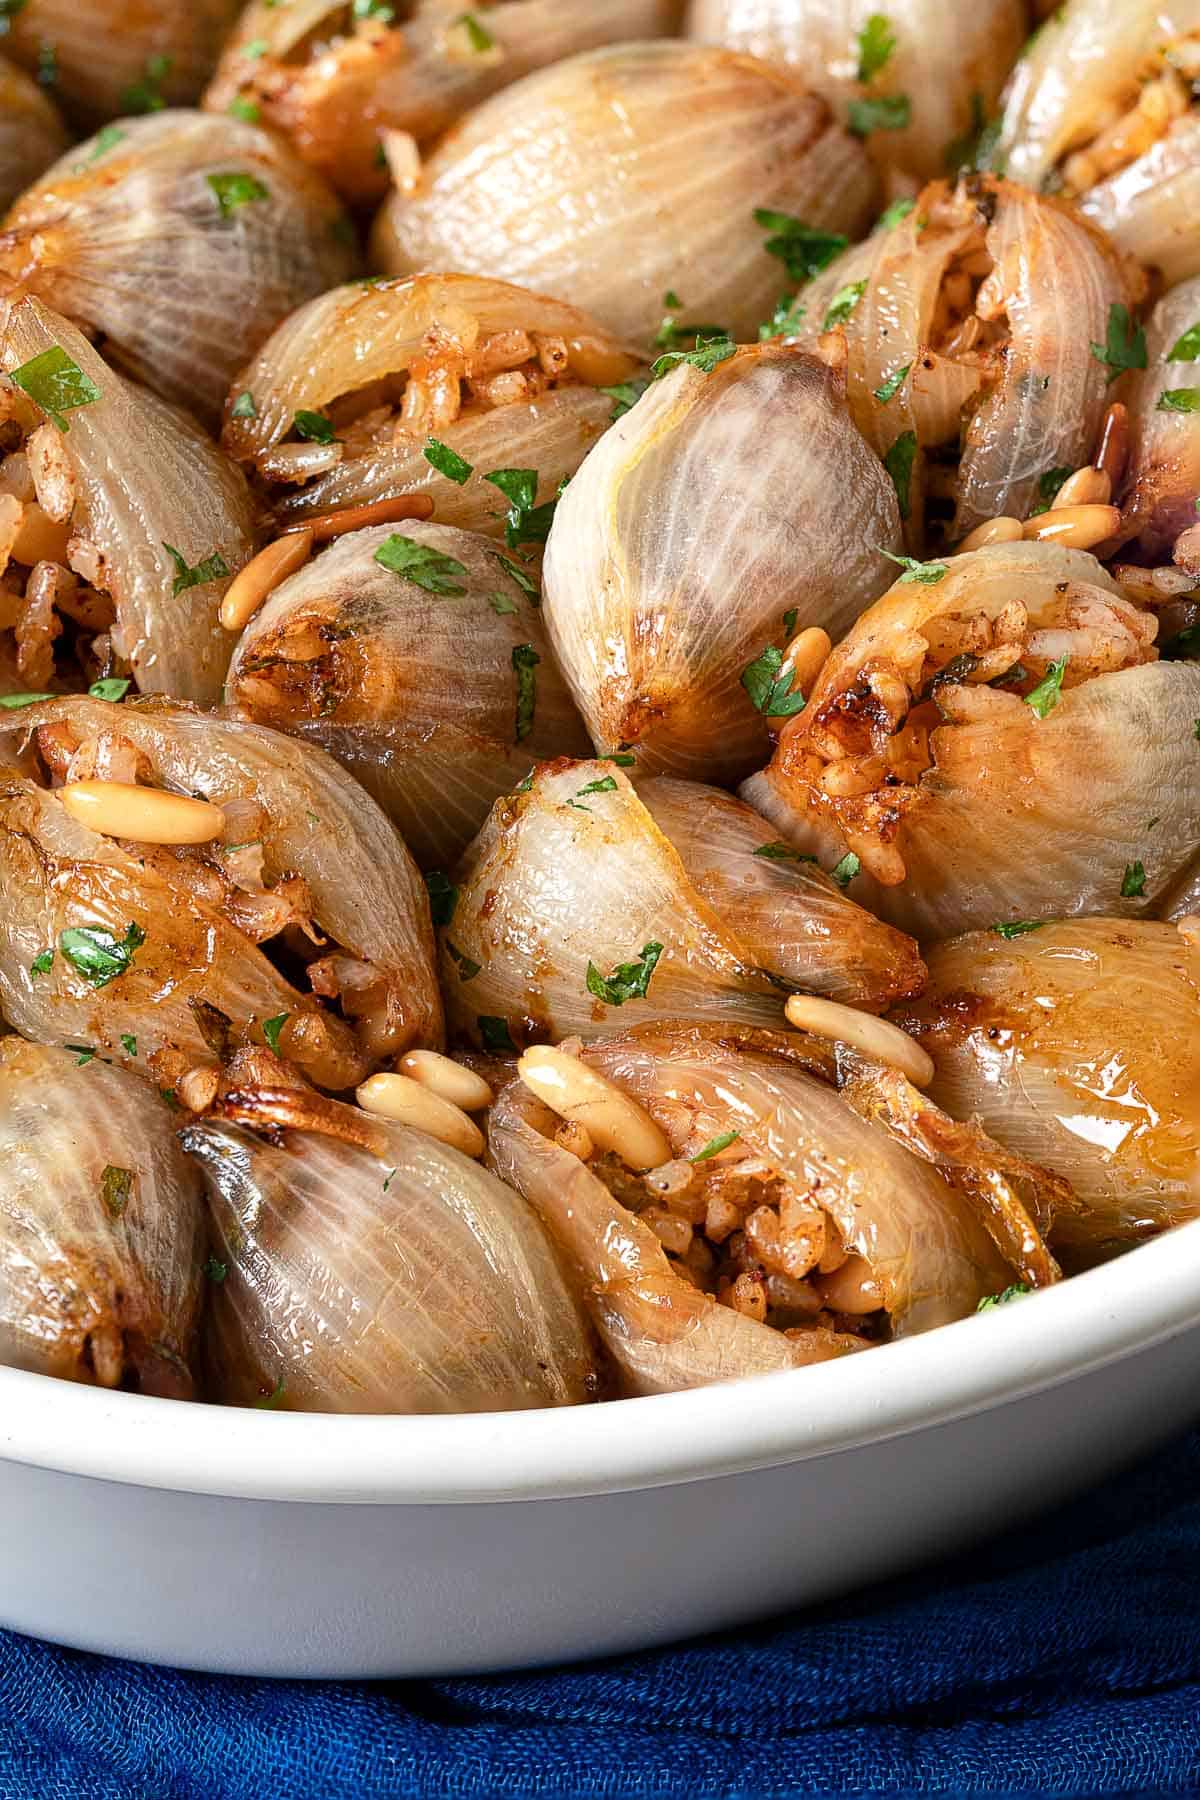 Onion in international cuisine